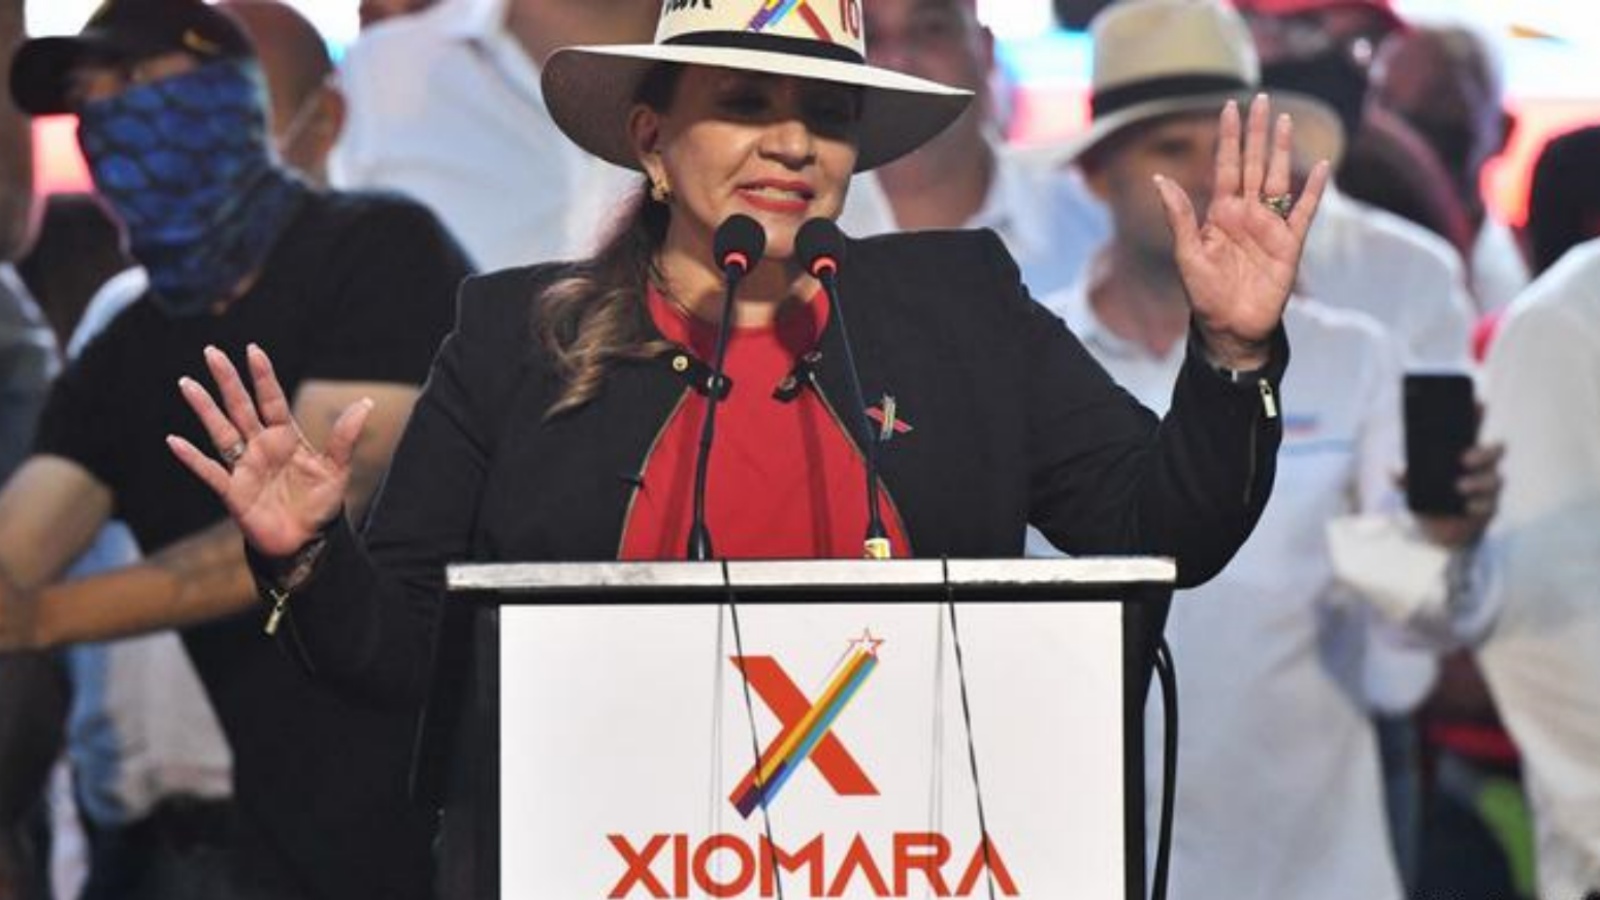 زيومارا كاسترو، زوجة الرئيس السابق زيلايا الذي أطاحه انقلاب في العام 2009 وزعيمة حزب 